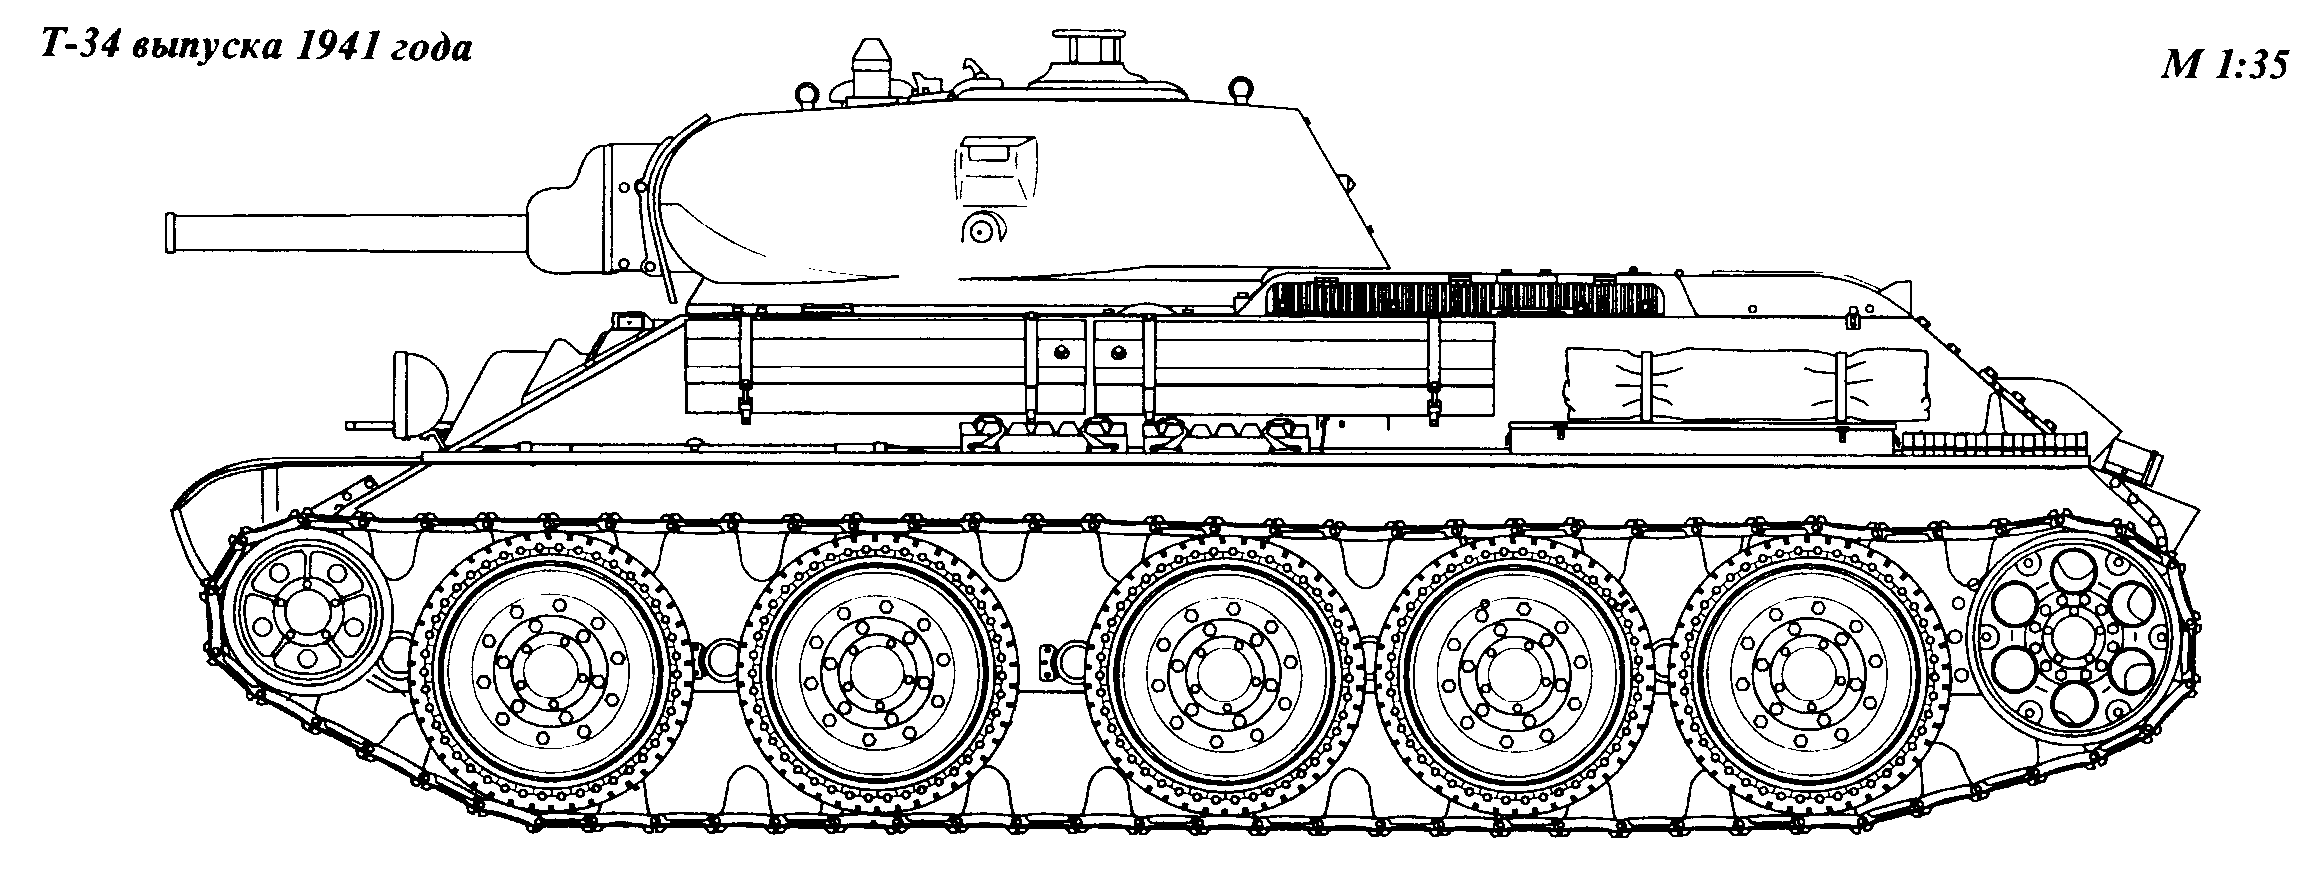 Средний танк Т-34 образца 1943 г. (Т-34-85)